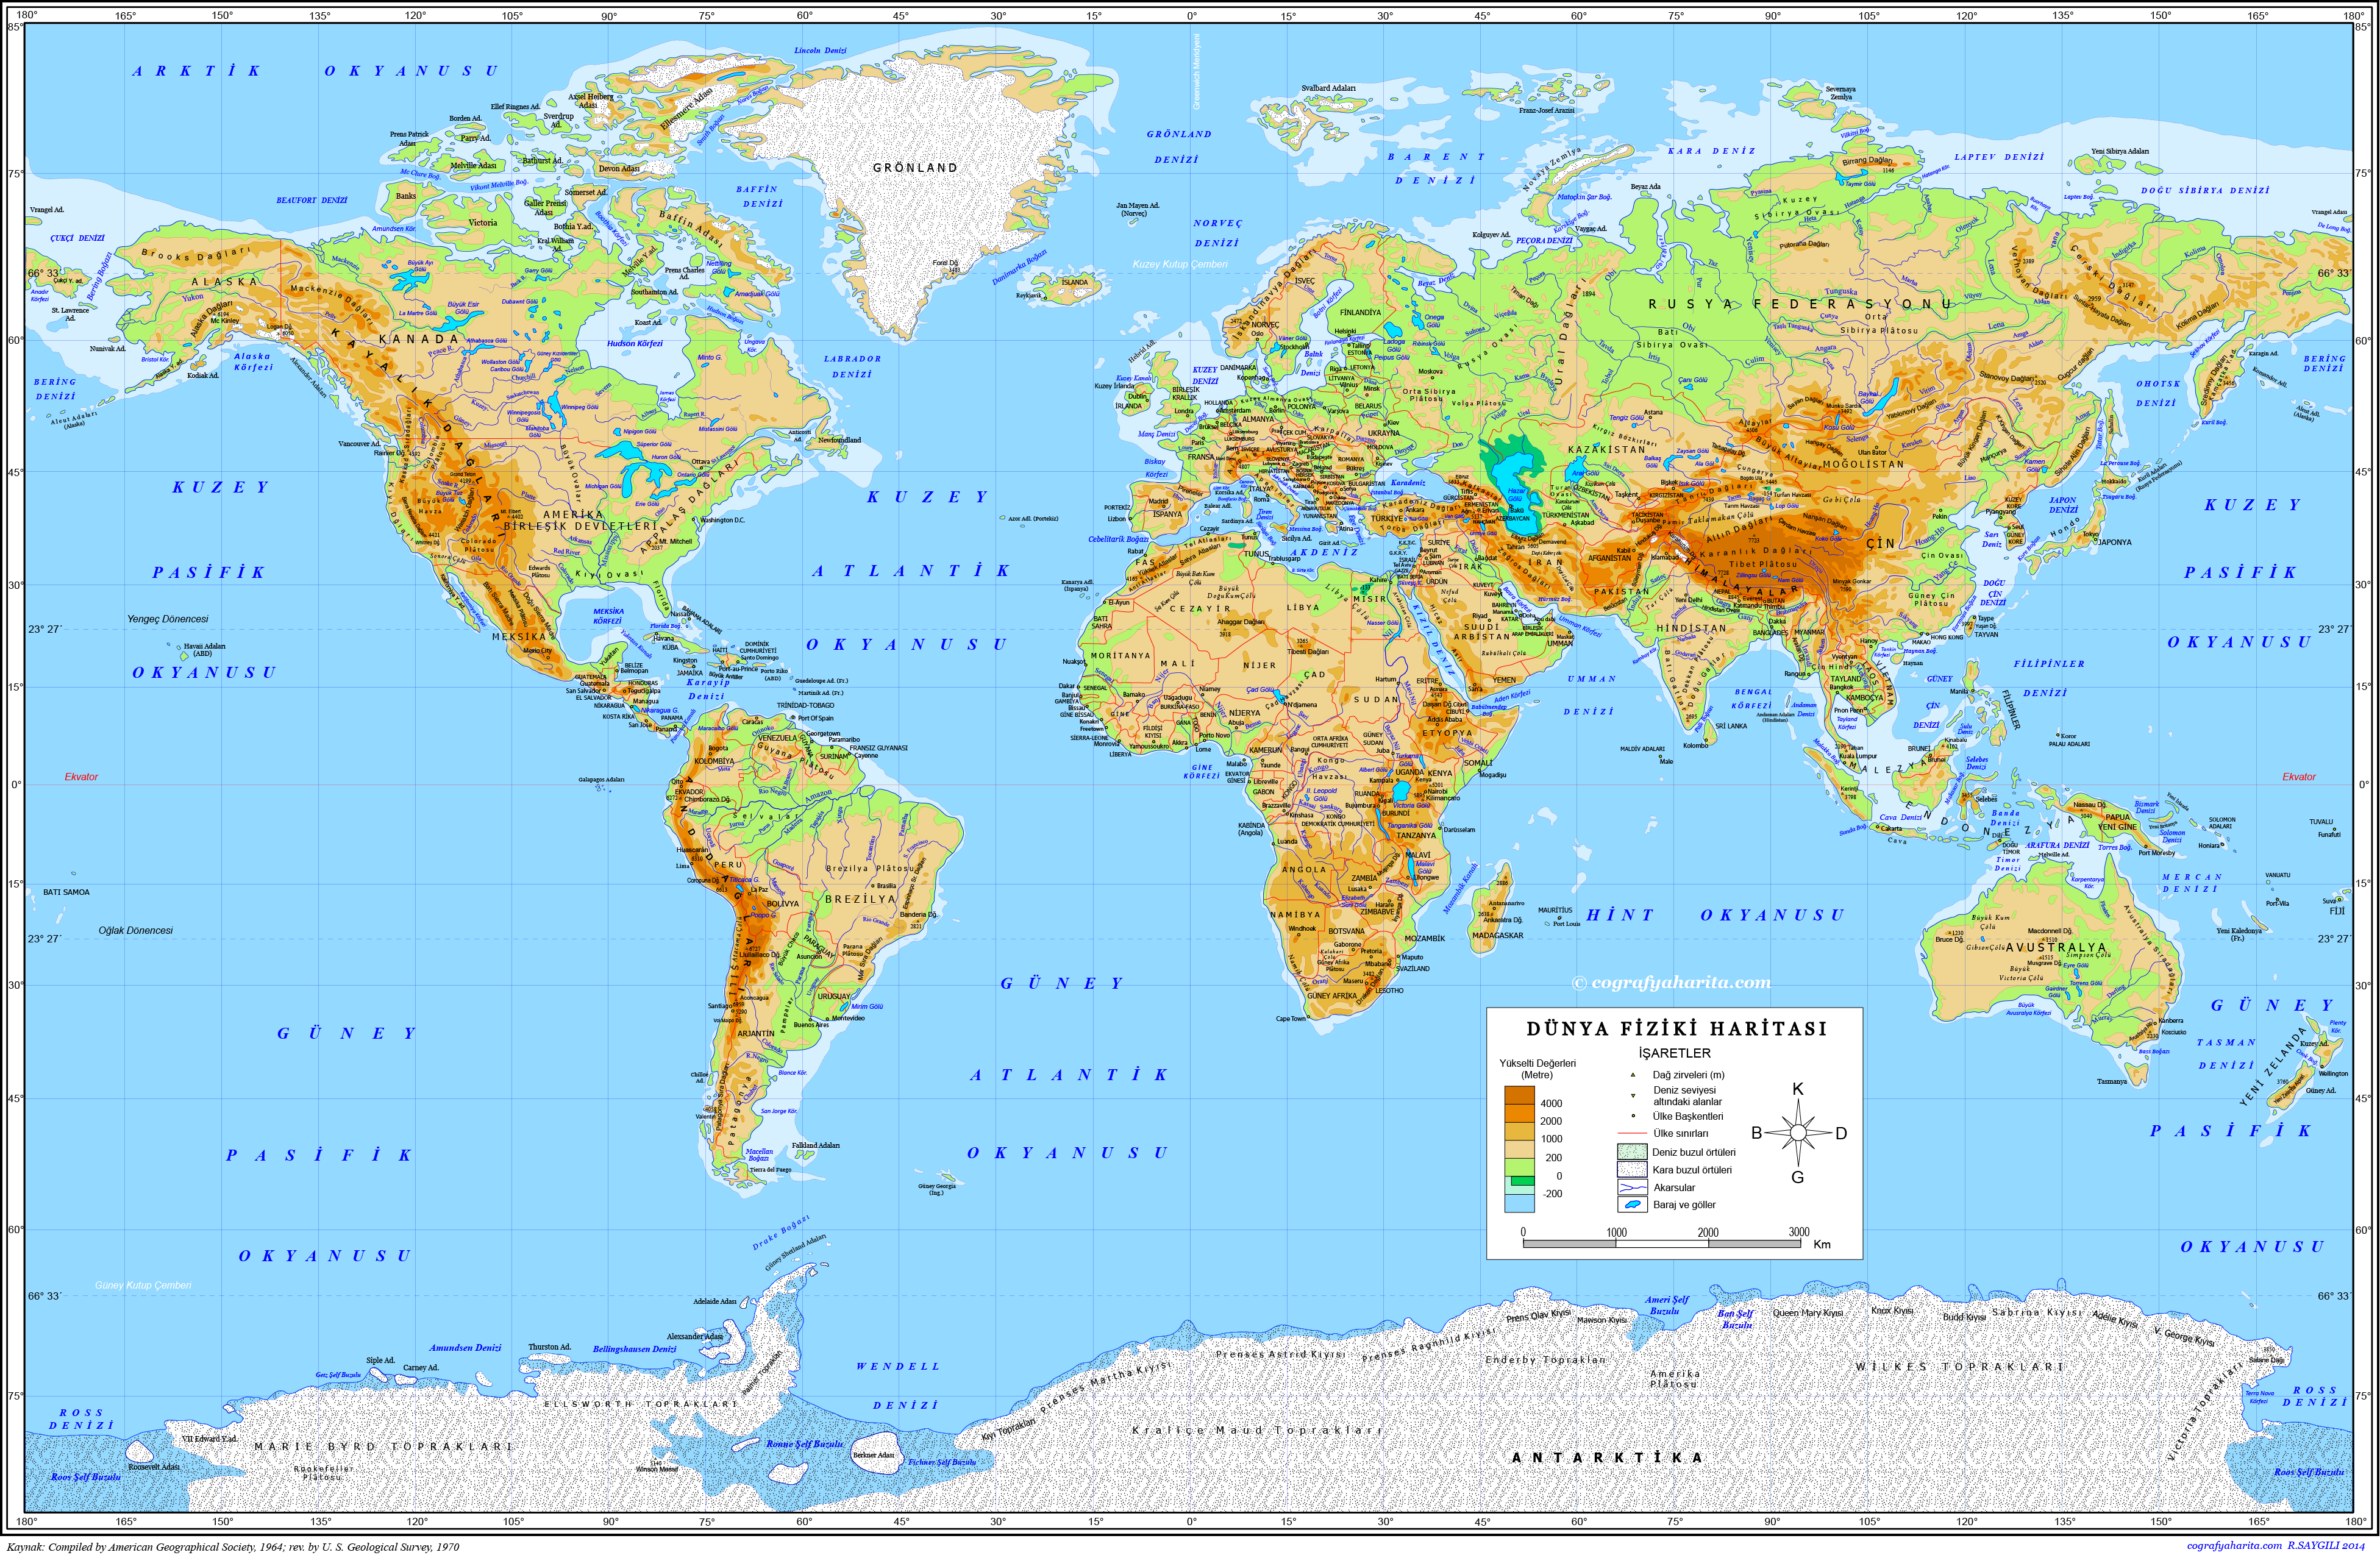 Dünya Fiziki Haritası: Yükseltiler, Ülke Sınırları, Dağ Zirveleri Ve